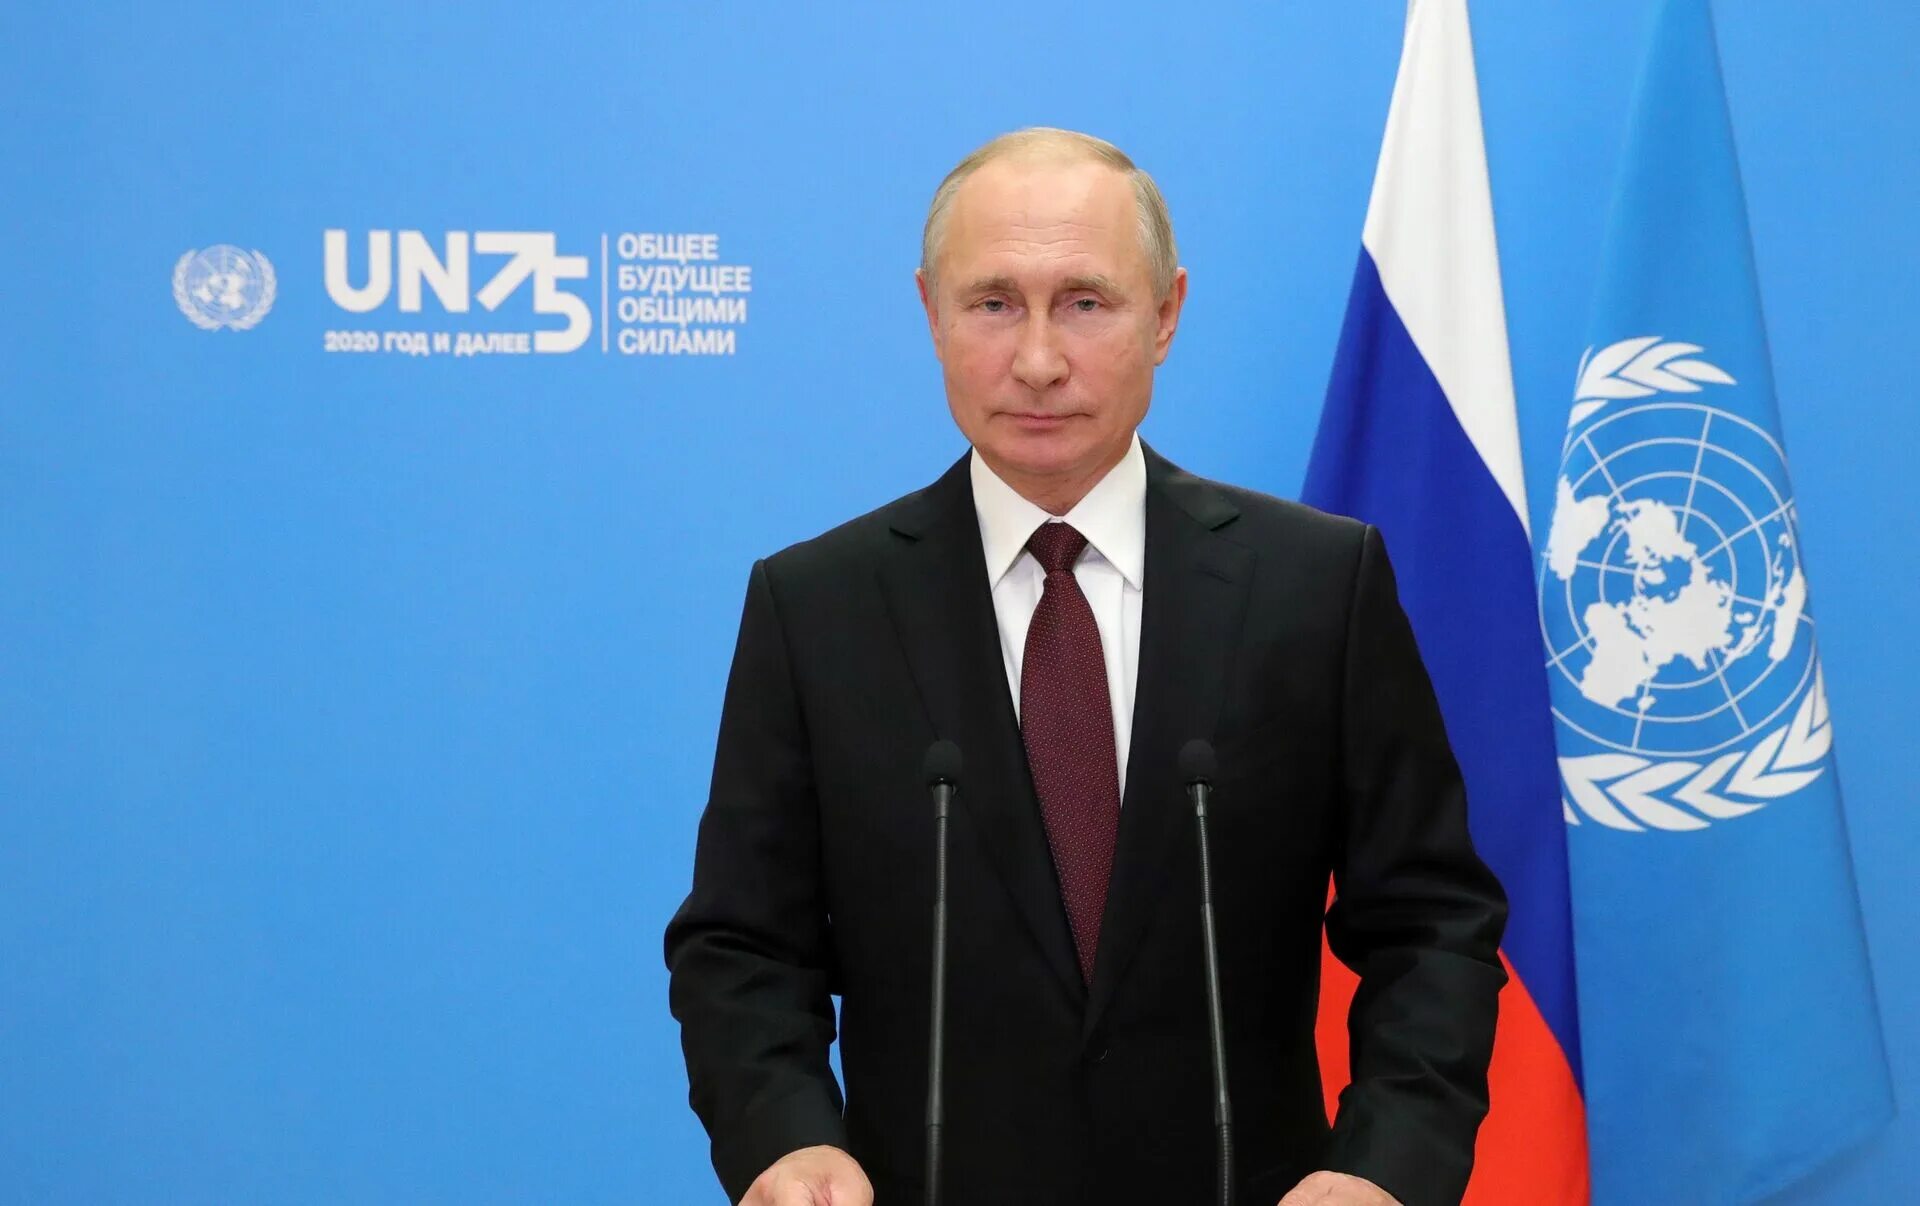 Выступление Путина. Речь Путина в ООН.